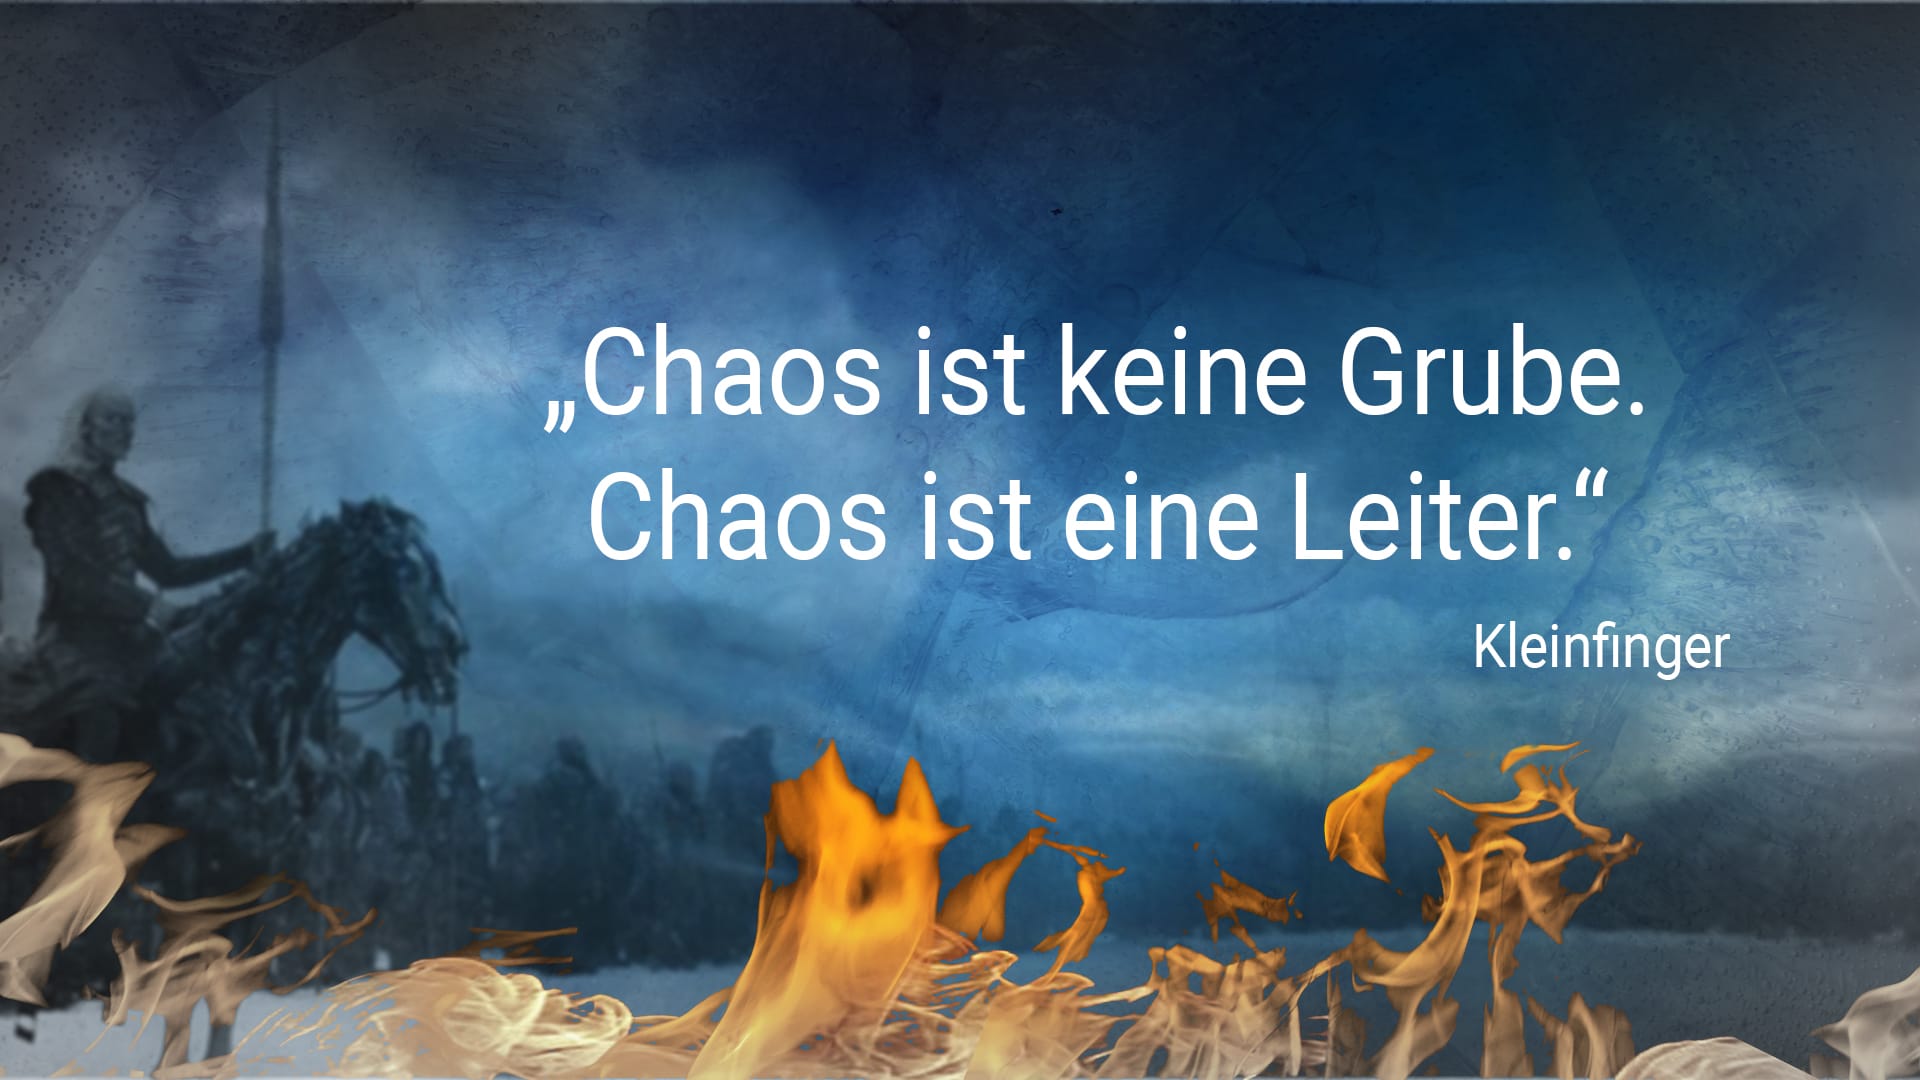 Game of Thrones: "Chaos ist keine Grube. Chaos ist eine Leiter." - Kleinfinger